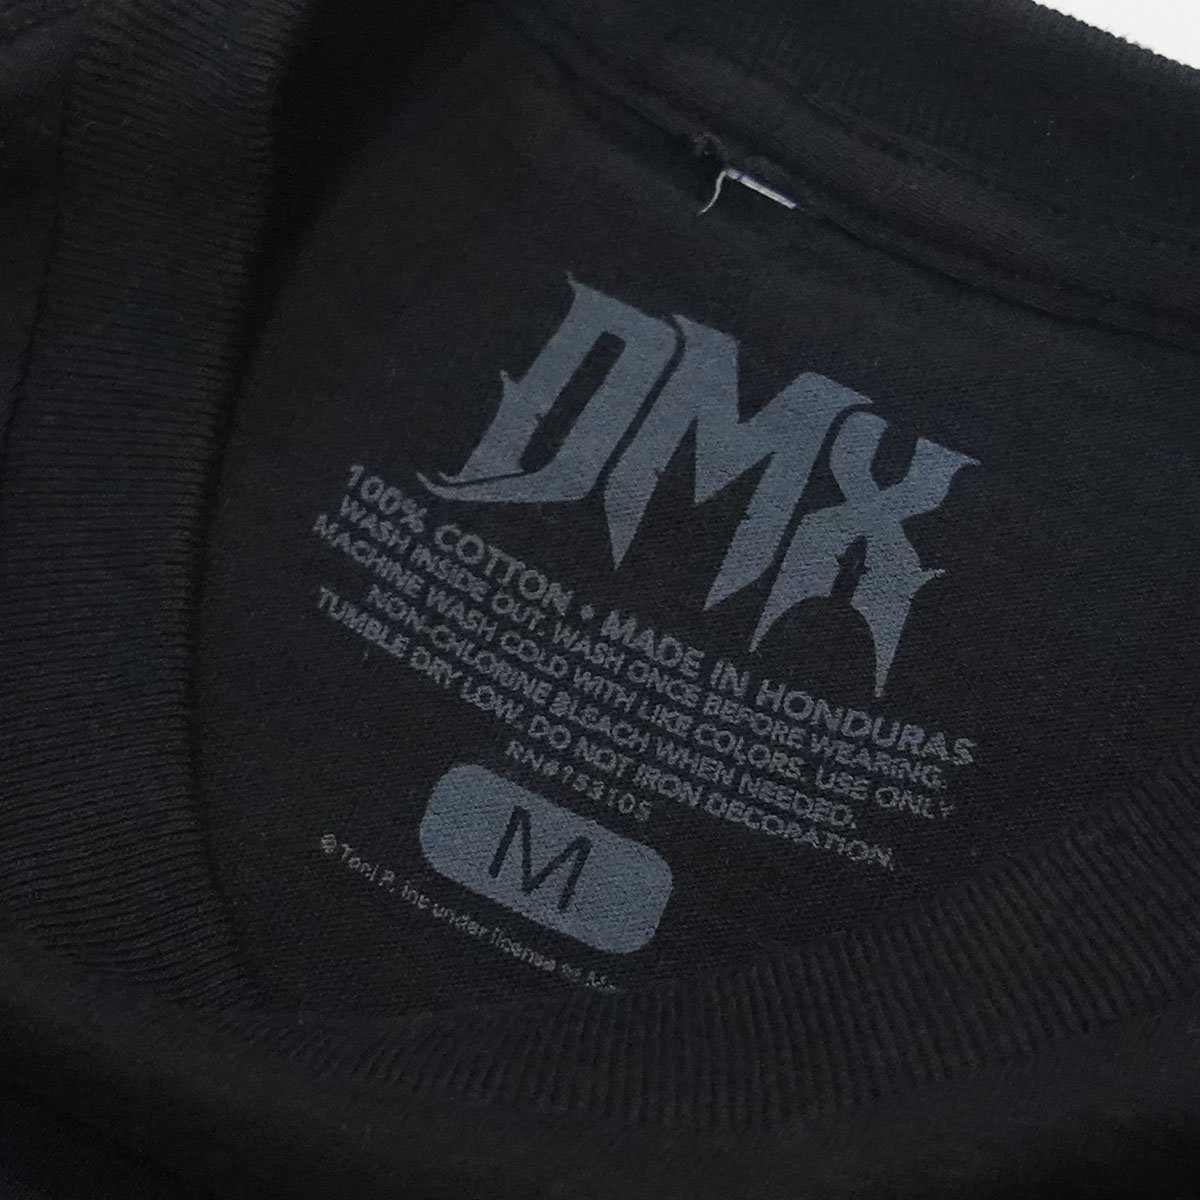 【希少】サイズXL  DMX  Tシャツ　ラップT　ヒップホップ　ブラック